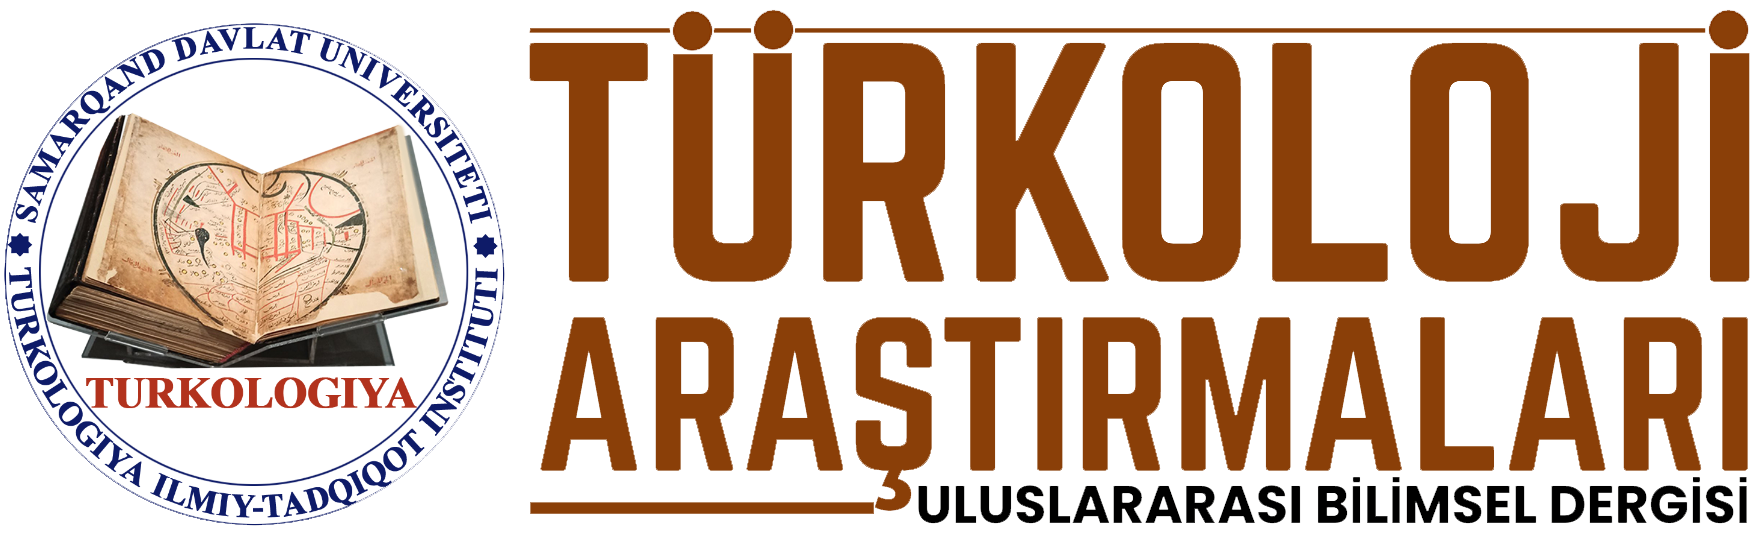 Turkologiya